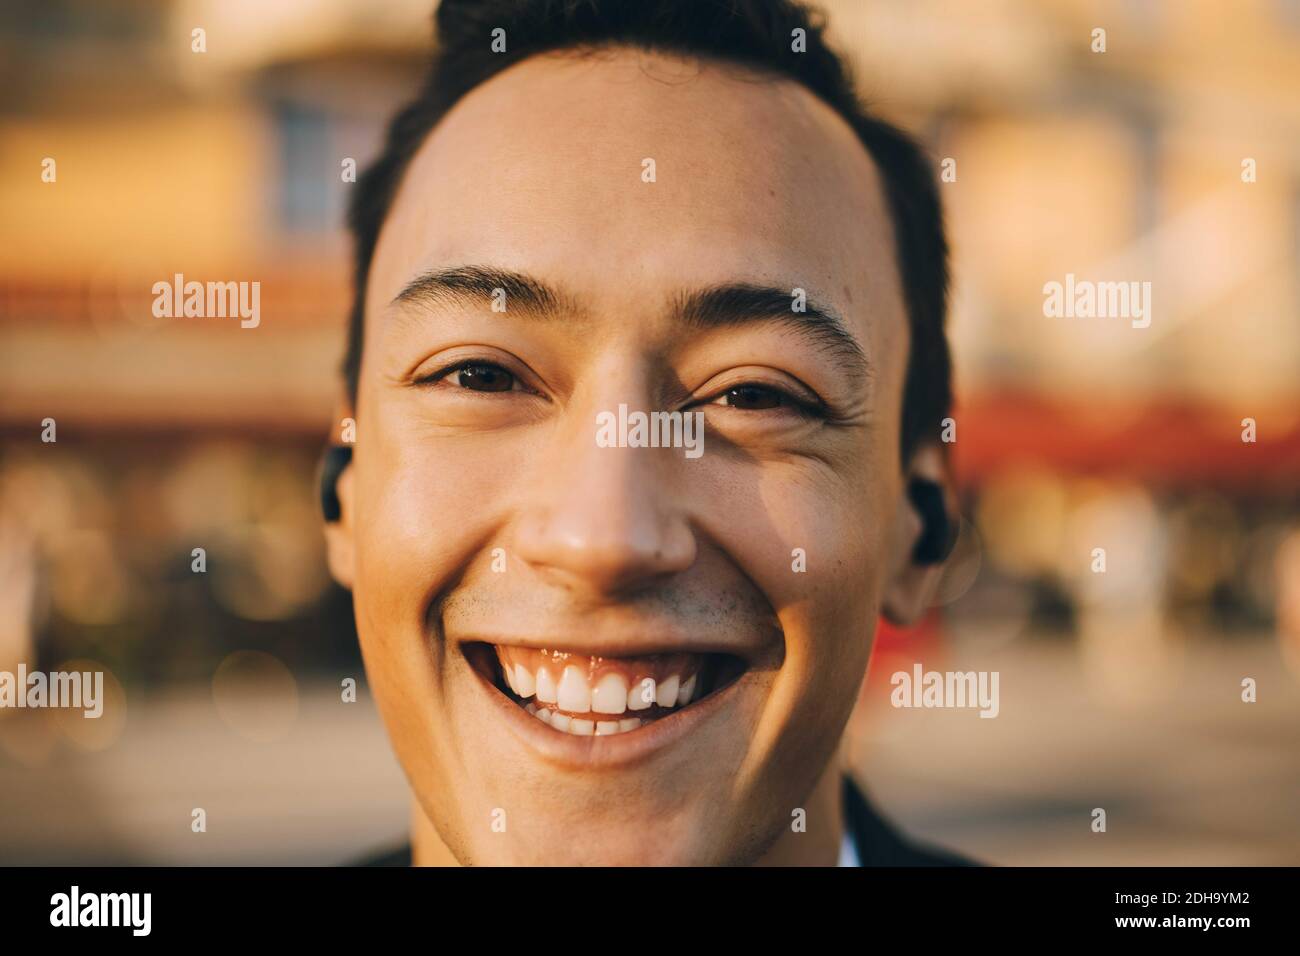 Nahaufnahme eines lächelnden jungen Mannes in der Stadt Stockfoto